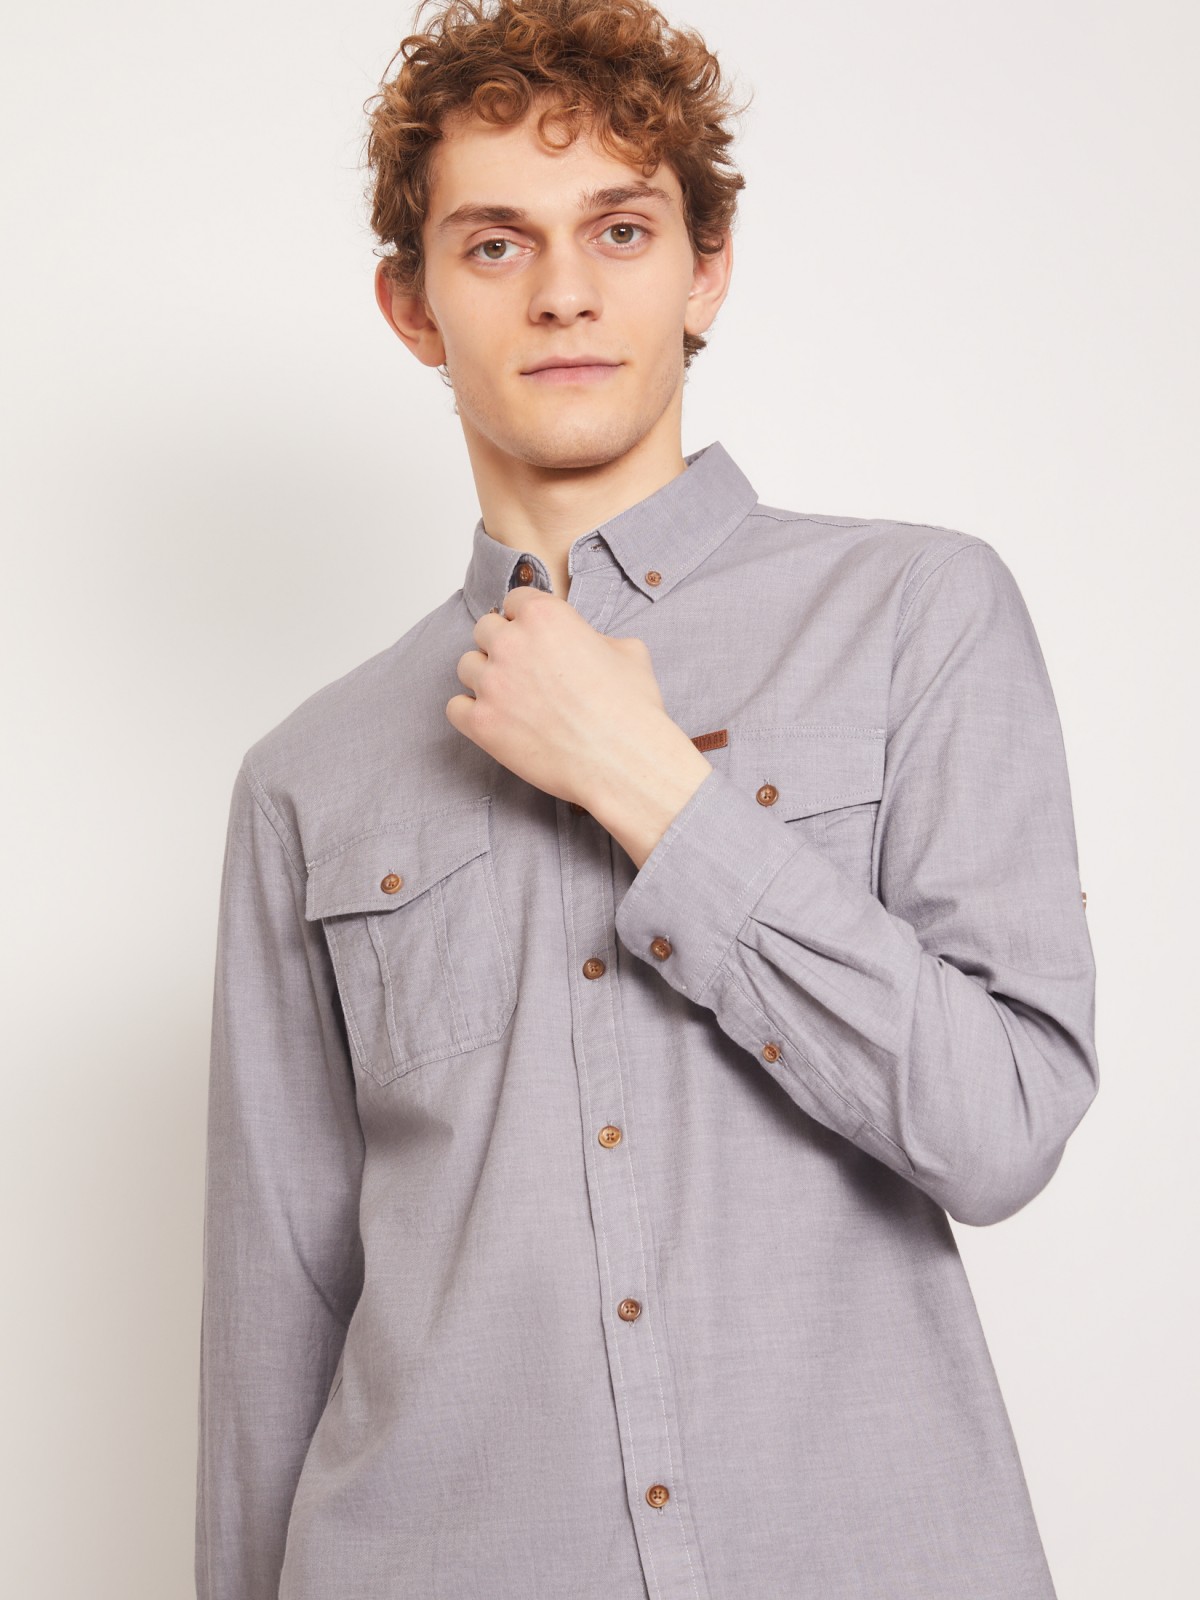 Хлопковая рубашка с накладными карманами zolla 211312162043, цвет серый, размер S - фото 2